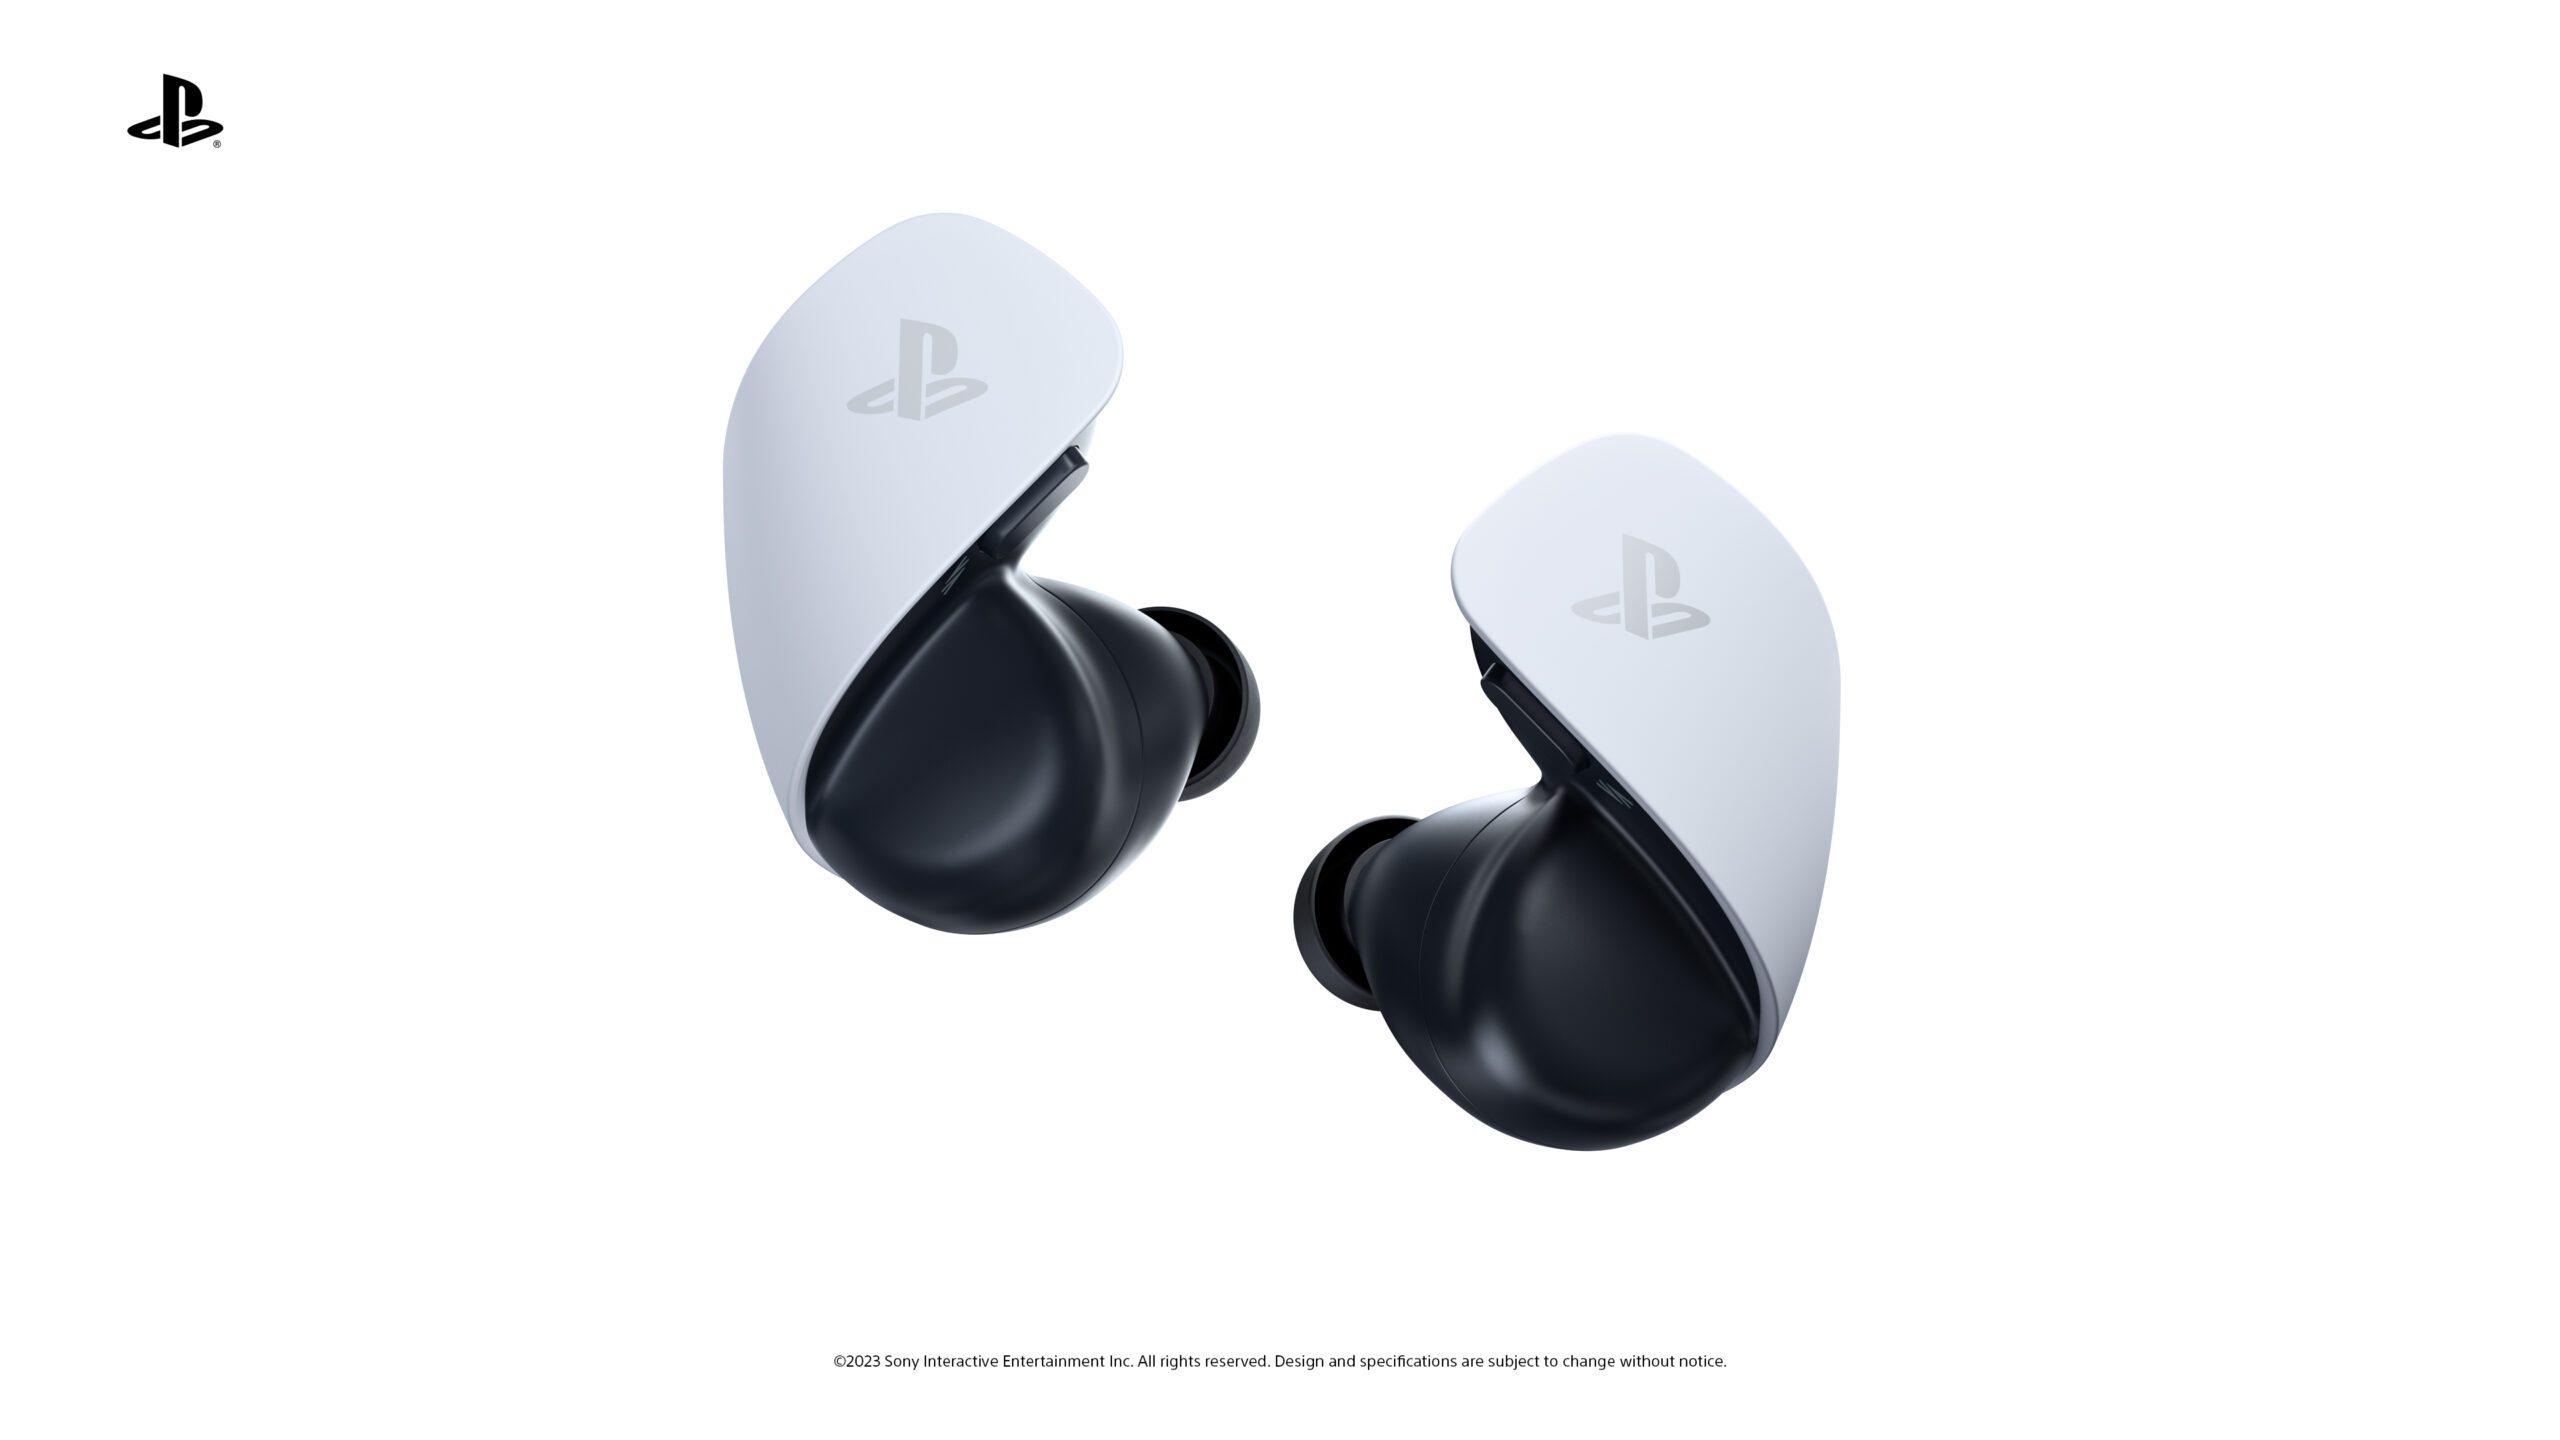 Nuevos auriculares inalámbricos para PS5 estarían en desarrollo